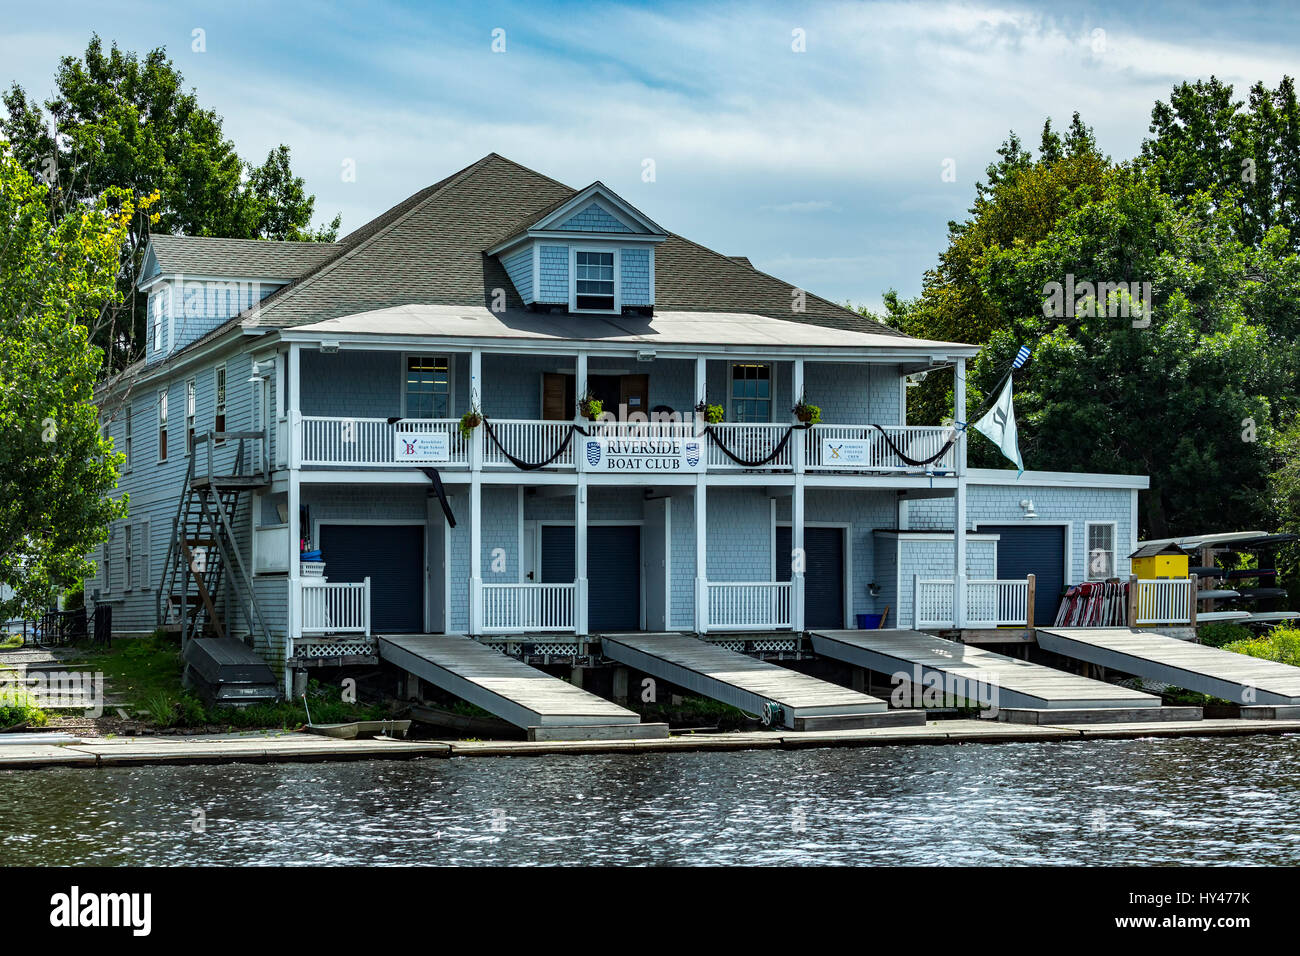 Riverside Boat Club boat house sur Charles River, Cambridge (région de Boston, Massachusetts USA) Banque D'Images